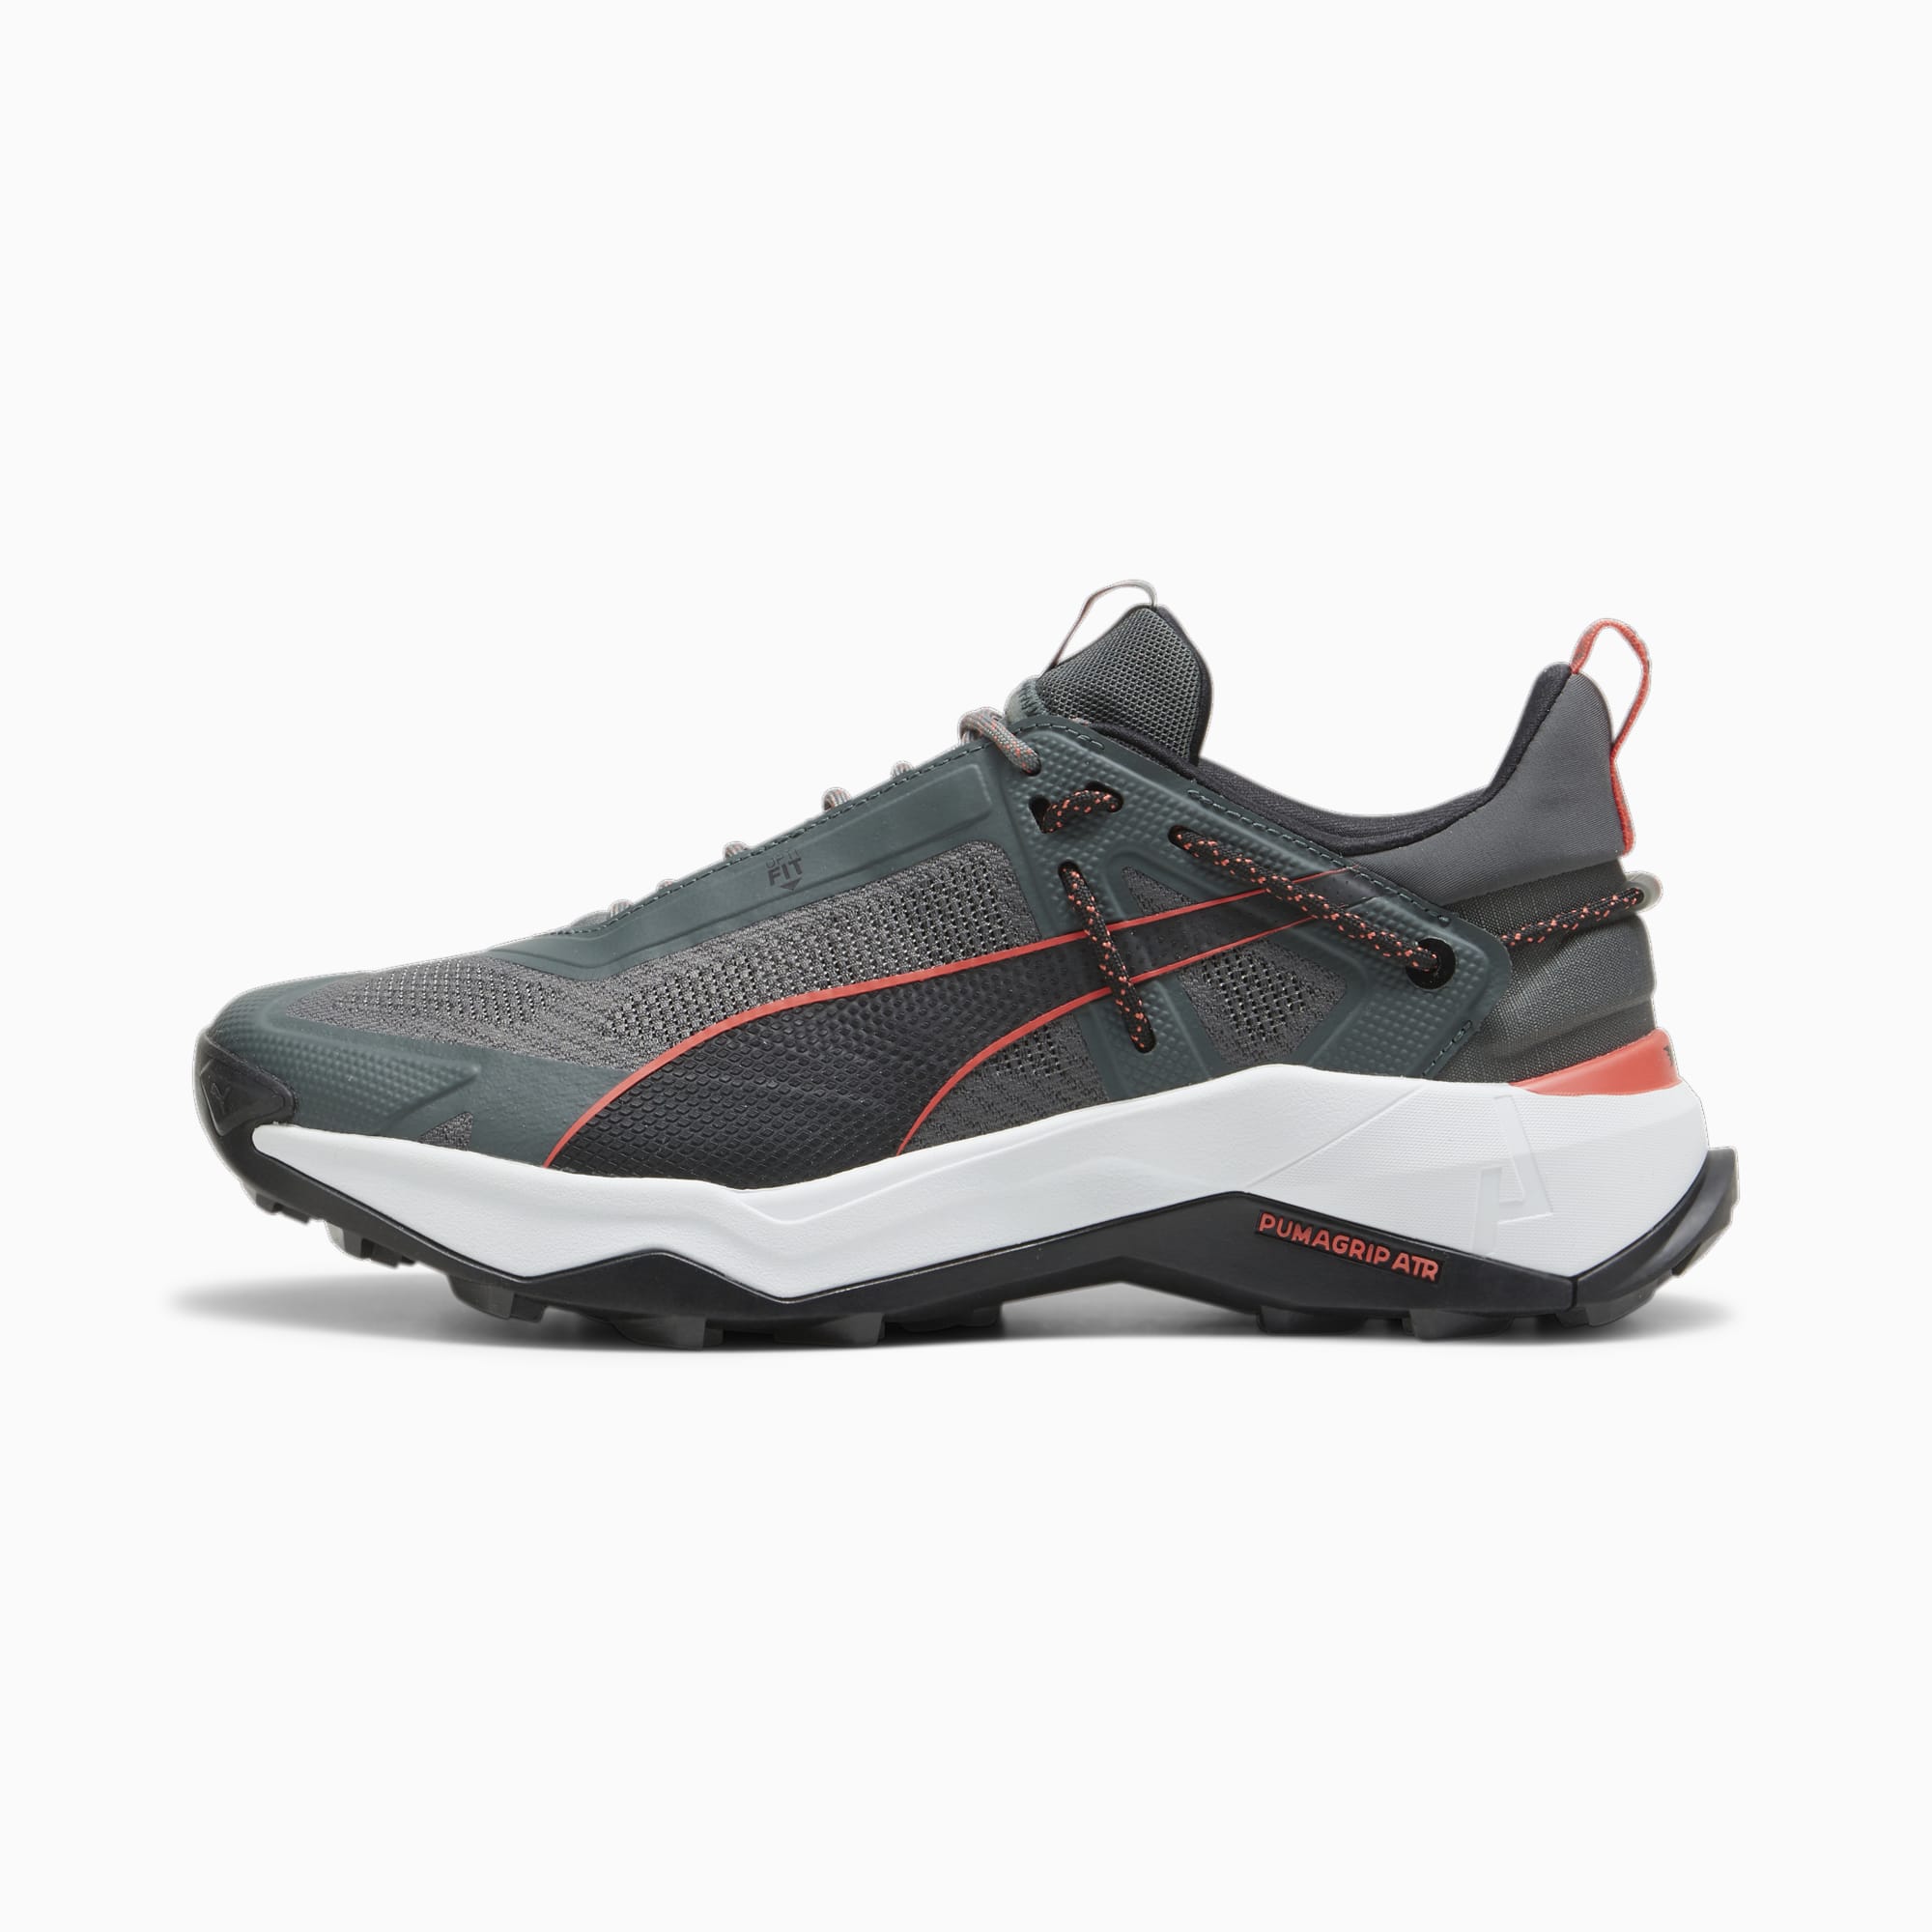 puma chaussures de randonnée nitro™ homme, rouge/noir/gris